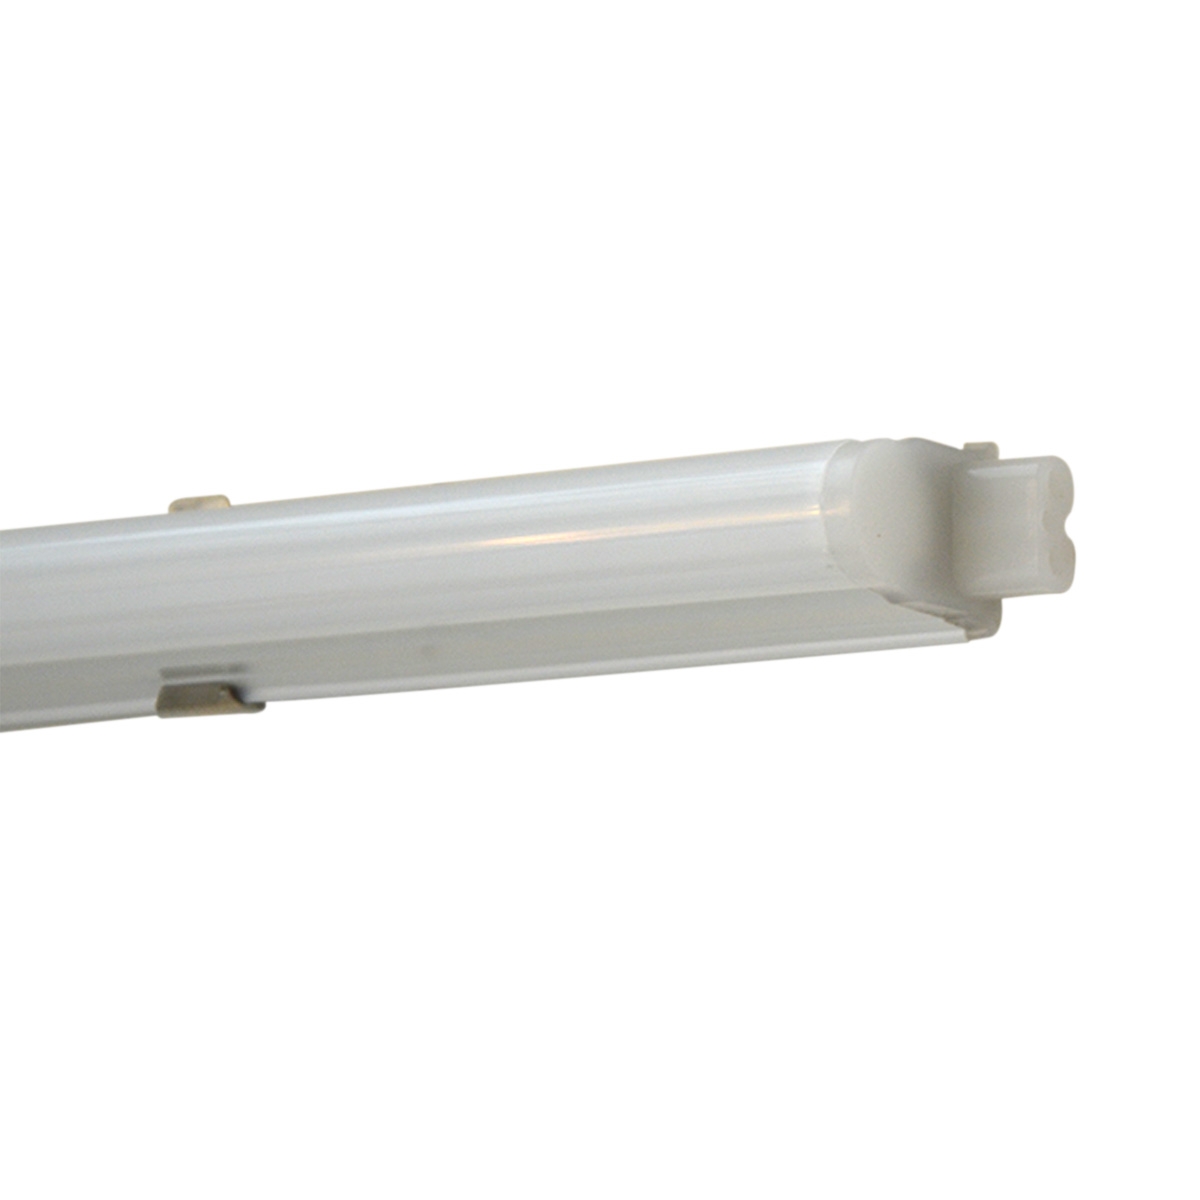 IT0409 Tube Light  (6500K) 9.5W مصباح من شركة ميجامان - موفرة للطاقة - اللون أبيض ساطع 